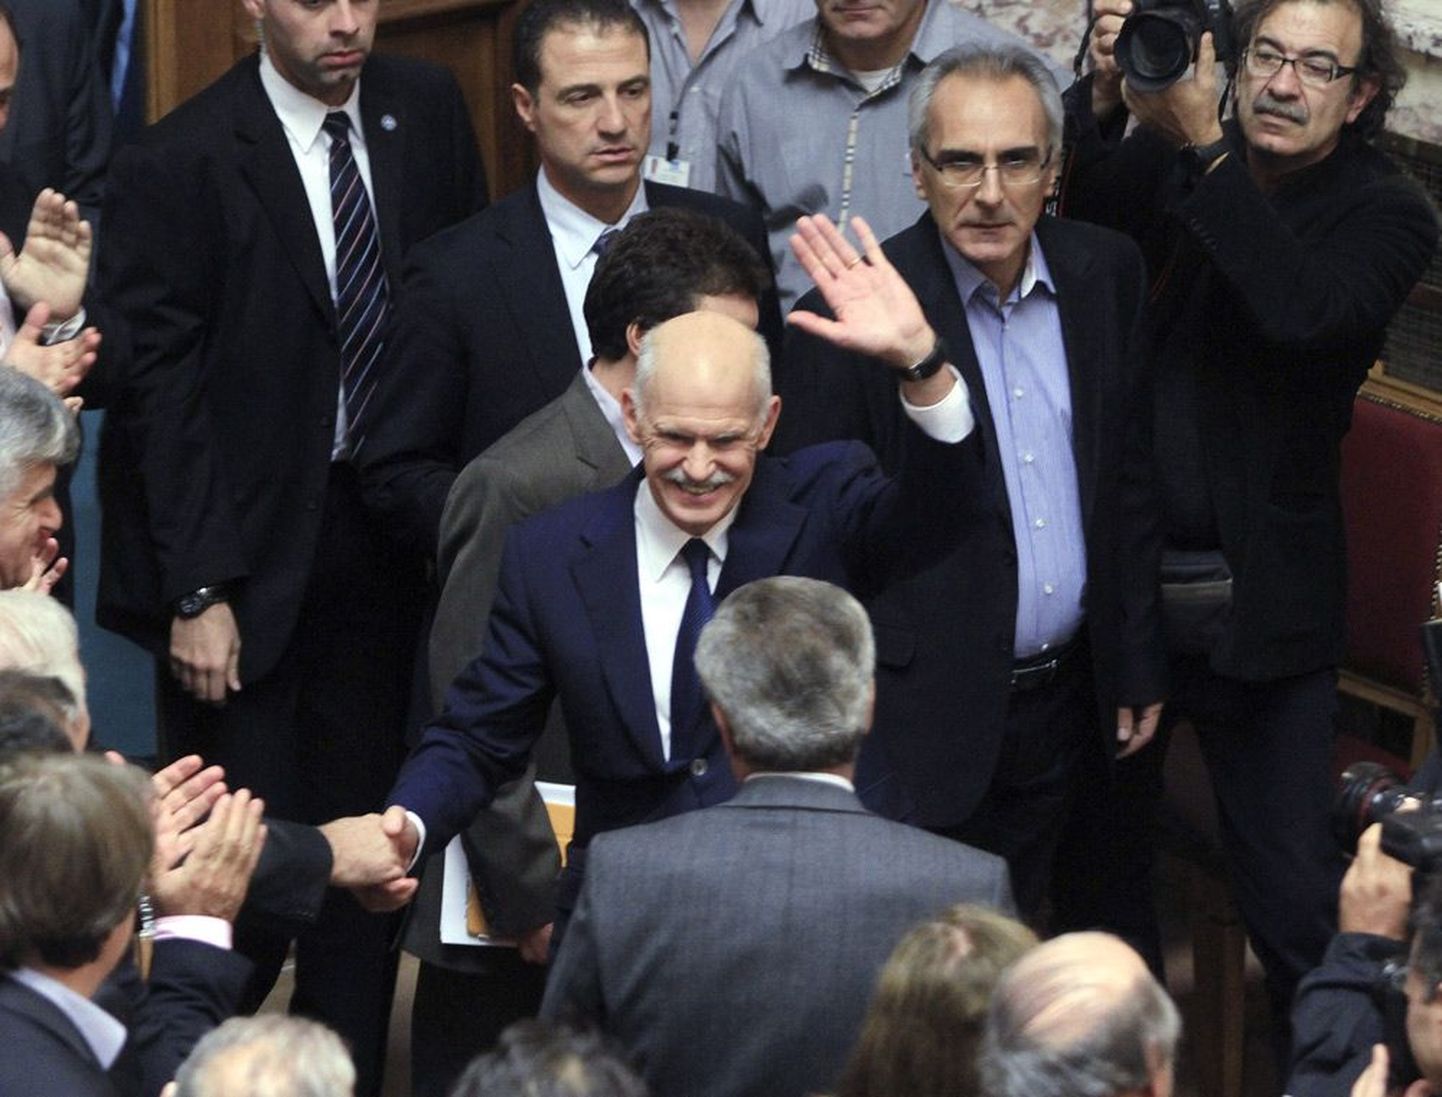 Kreeka peaminister Georgios Papandreou oli eile oma parteikaaslaste ette astudes võiduka näoga, nagu poleks midagi juhtunudki.